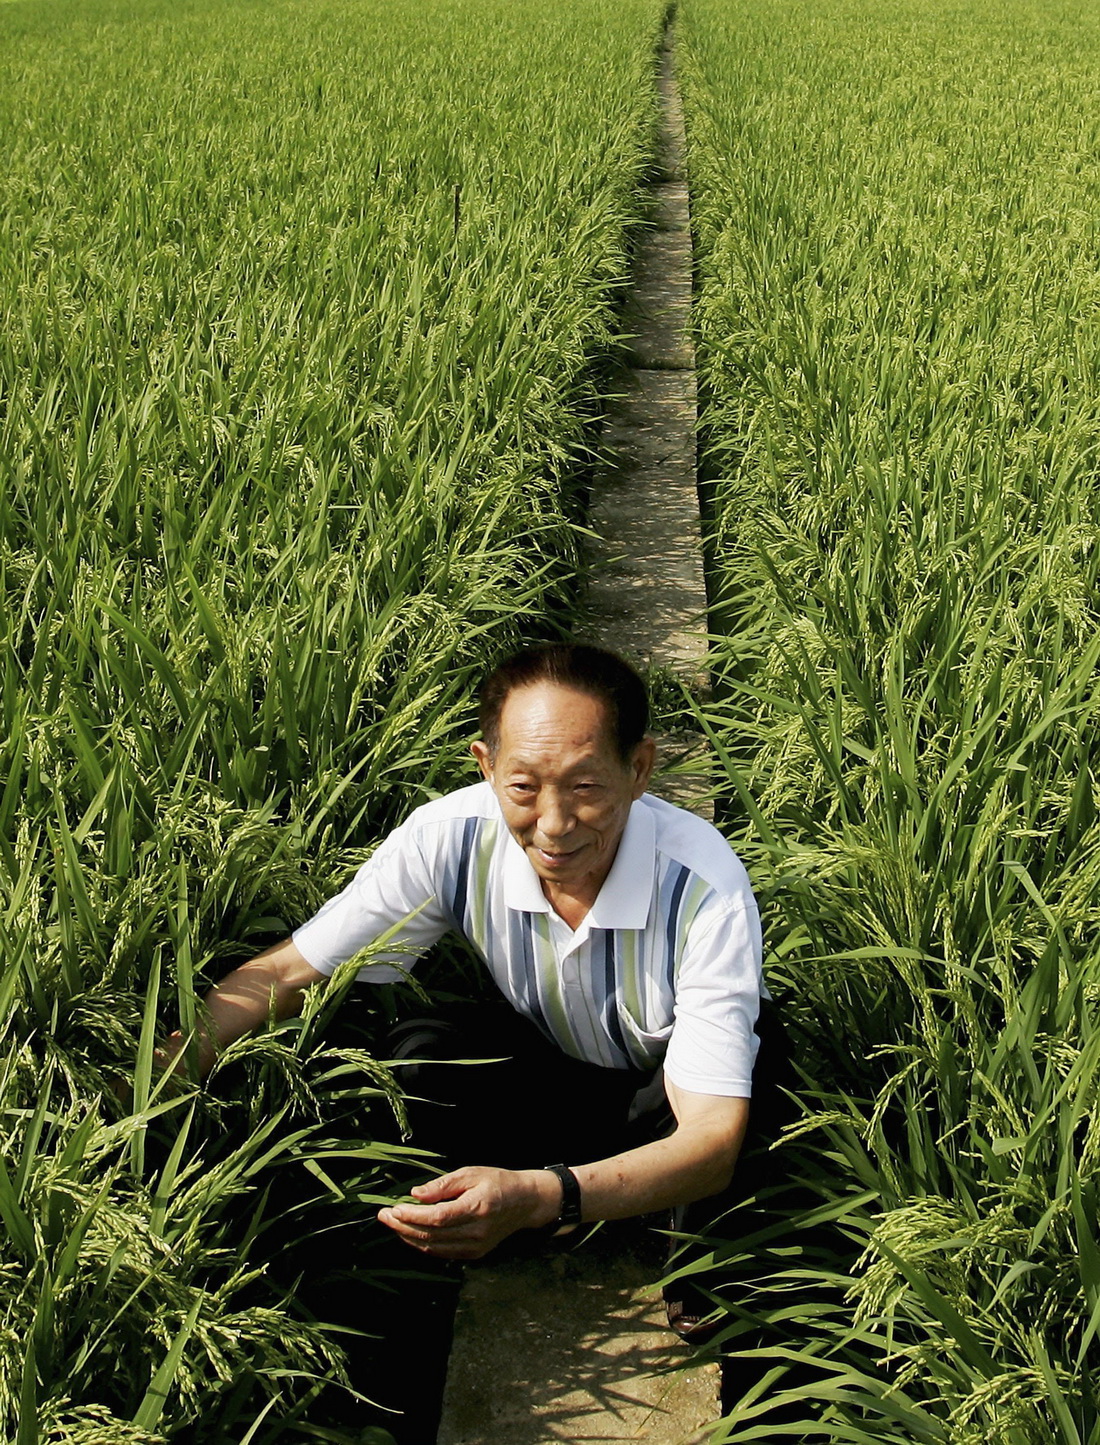 我国将有望实现杂交水稻大规模机械化制种|云南优科绿都农业研究院有限公司